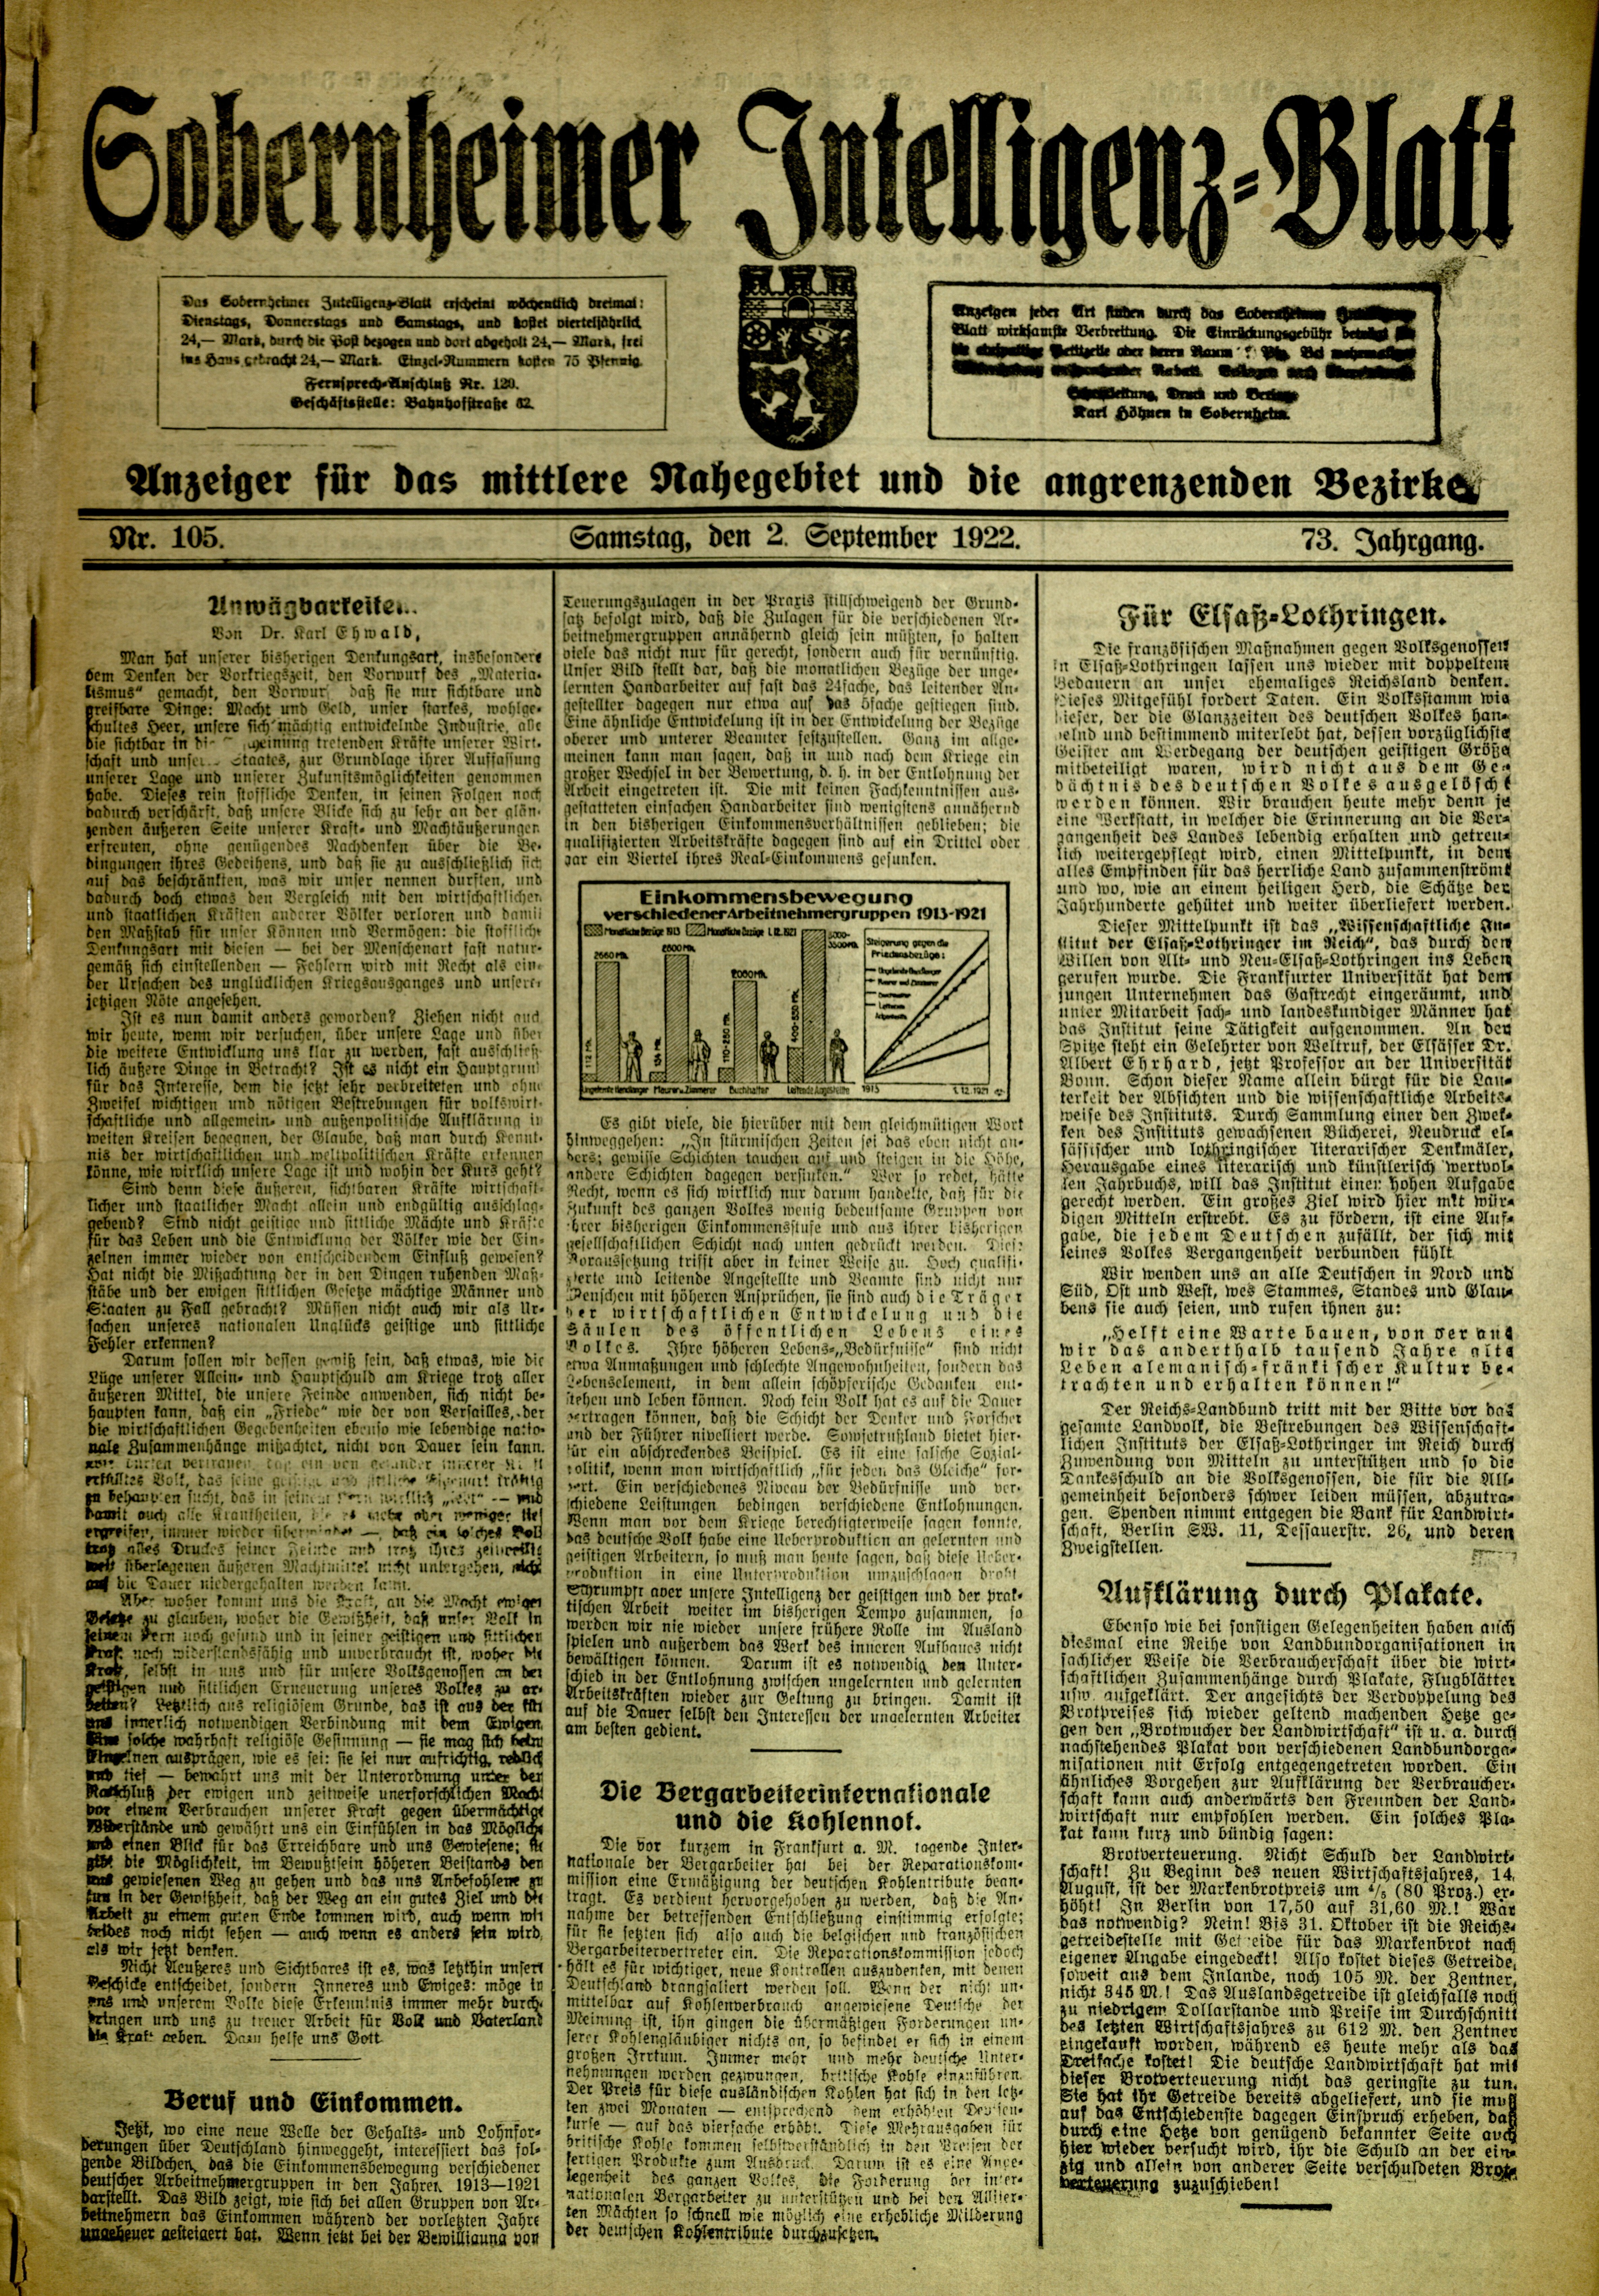 Zeitung: Sobernheimer Intelligenzblatt; September 1922, Jg. 73 Nr. 105 (Heimatmuseum Bad Sobernheim CC BY-NC-SA)